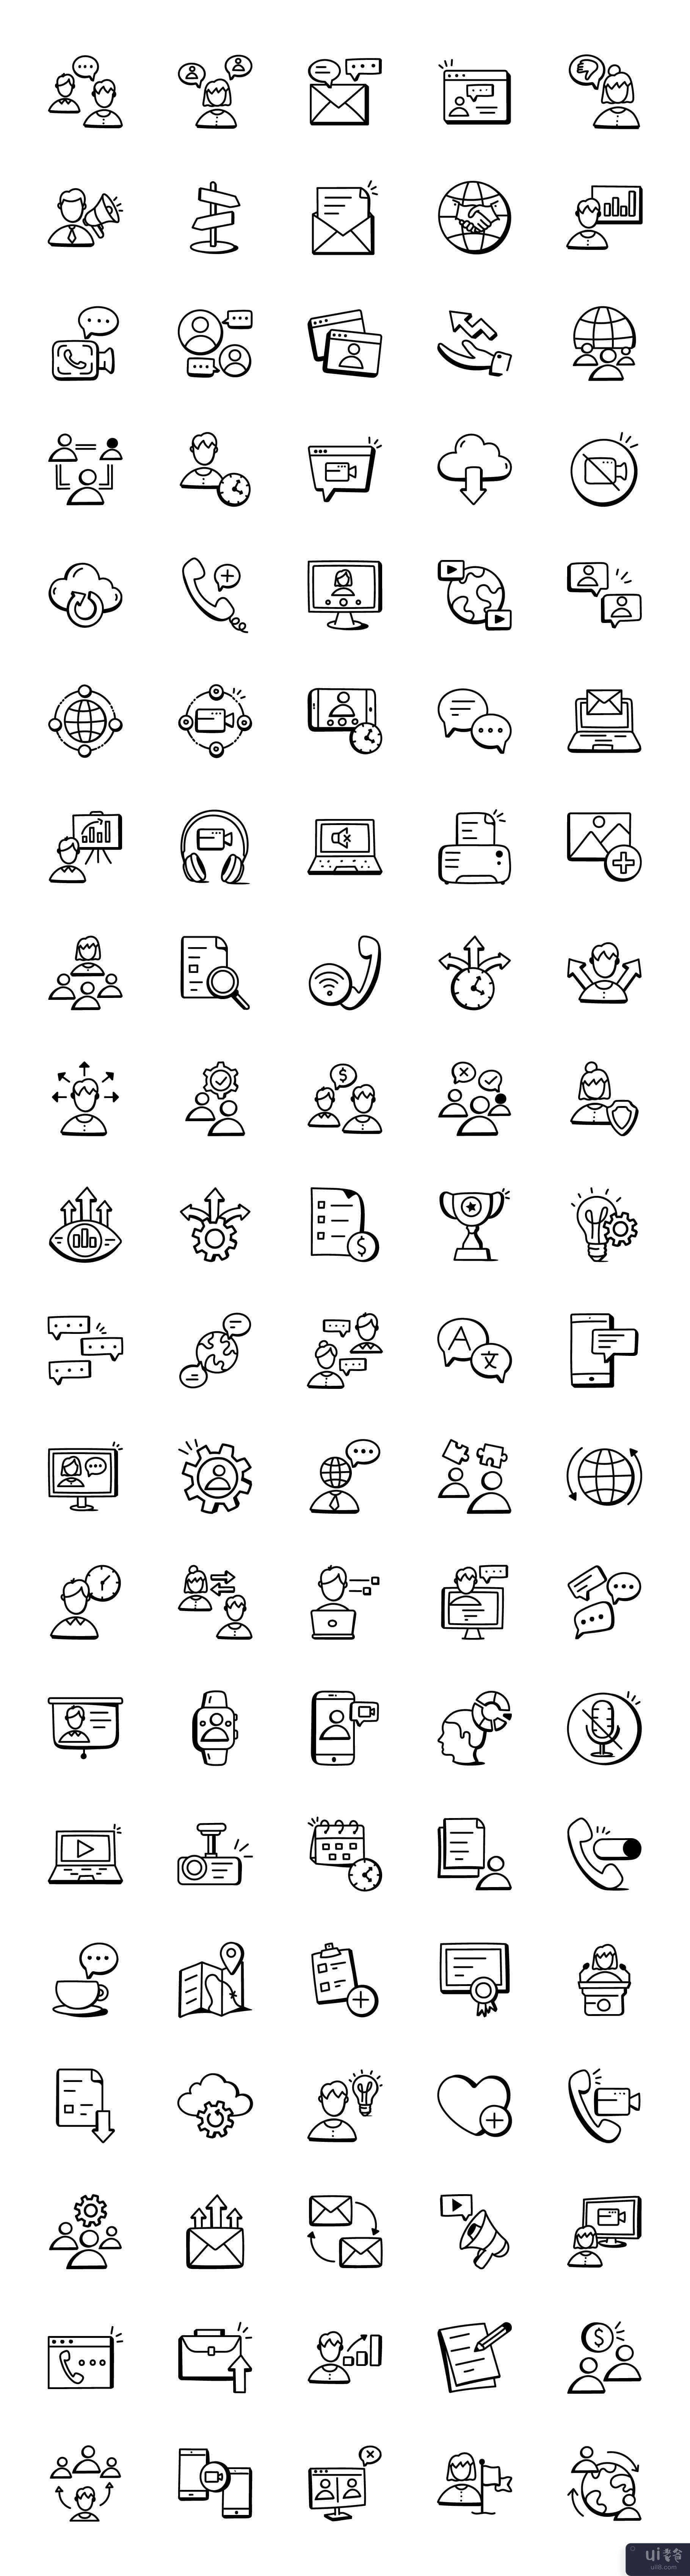 100 涂鸦讨论和会议图标(100 Doodle Discussion and Meeting Icons)插图2